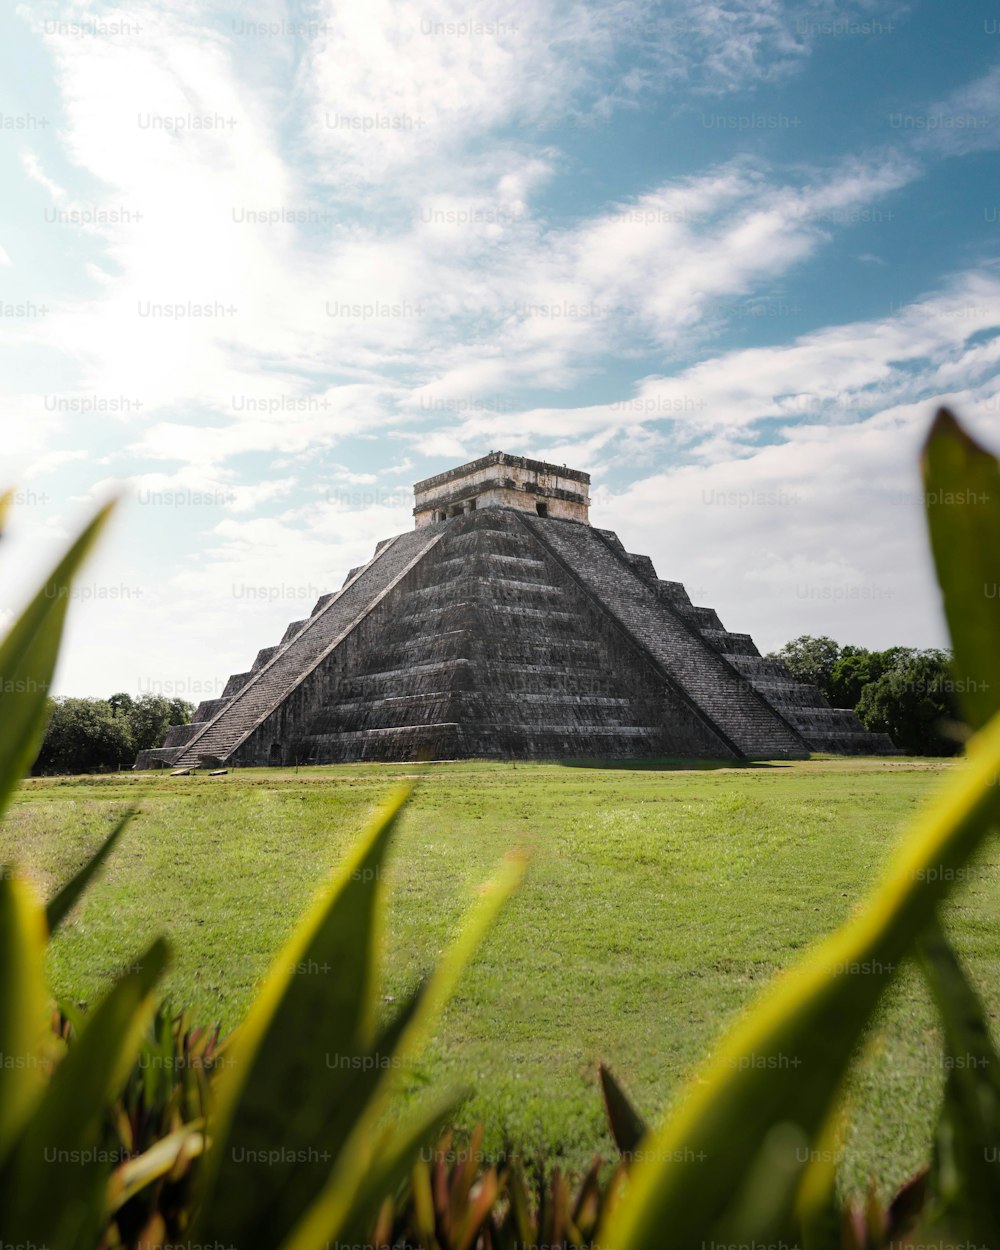 멕시코 유카탄 반도에 있는 고대 마야 도시 치첸이트사 유적지에 있는 사원인 쿠쿨칸 피라미드의 수직 사진